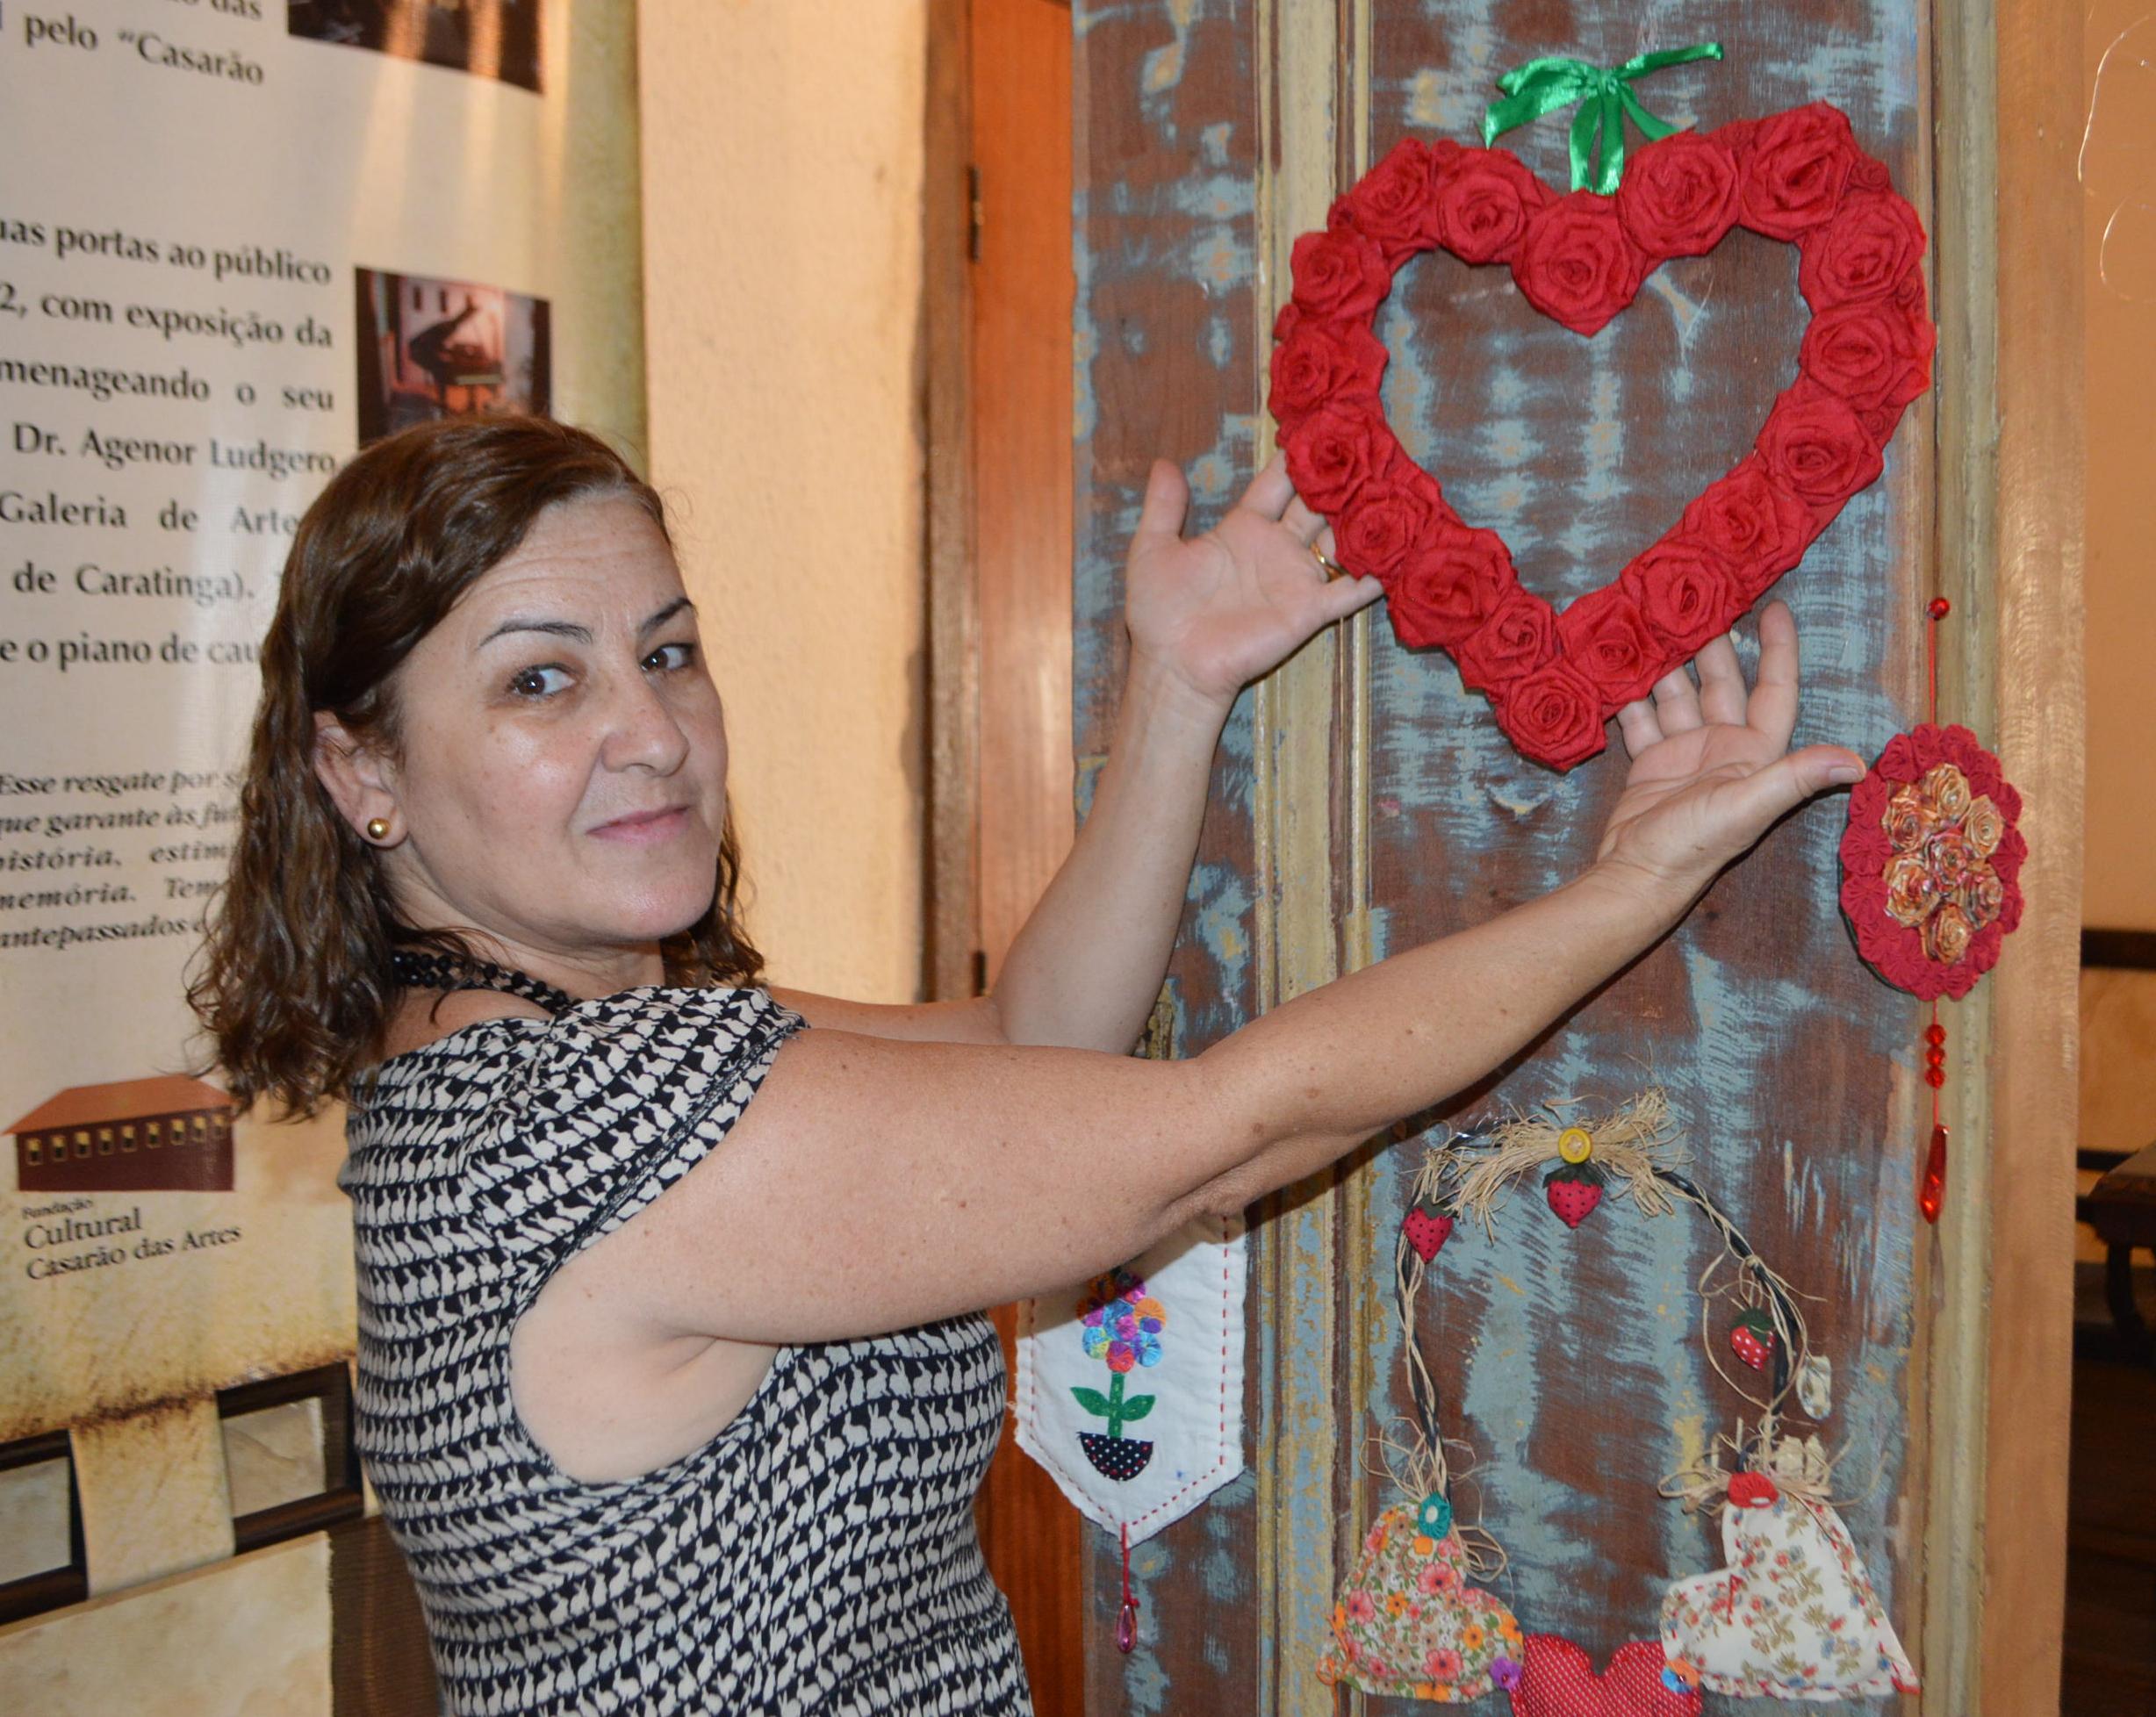 Artista caratinguense abre exposição de artesanato no Casarão das Artes